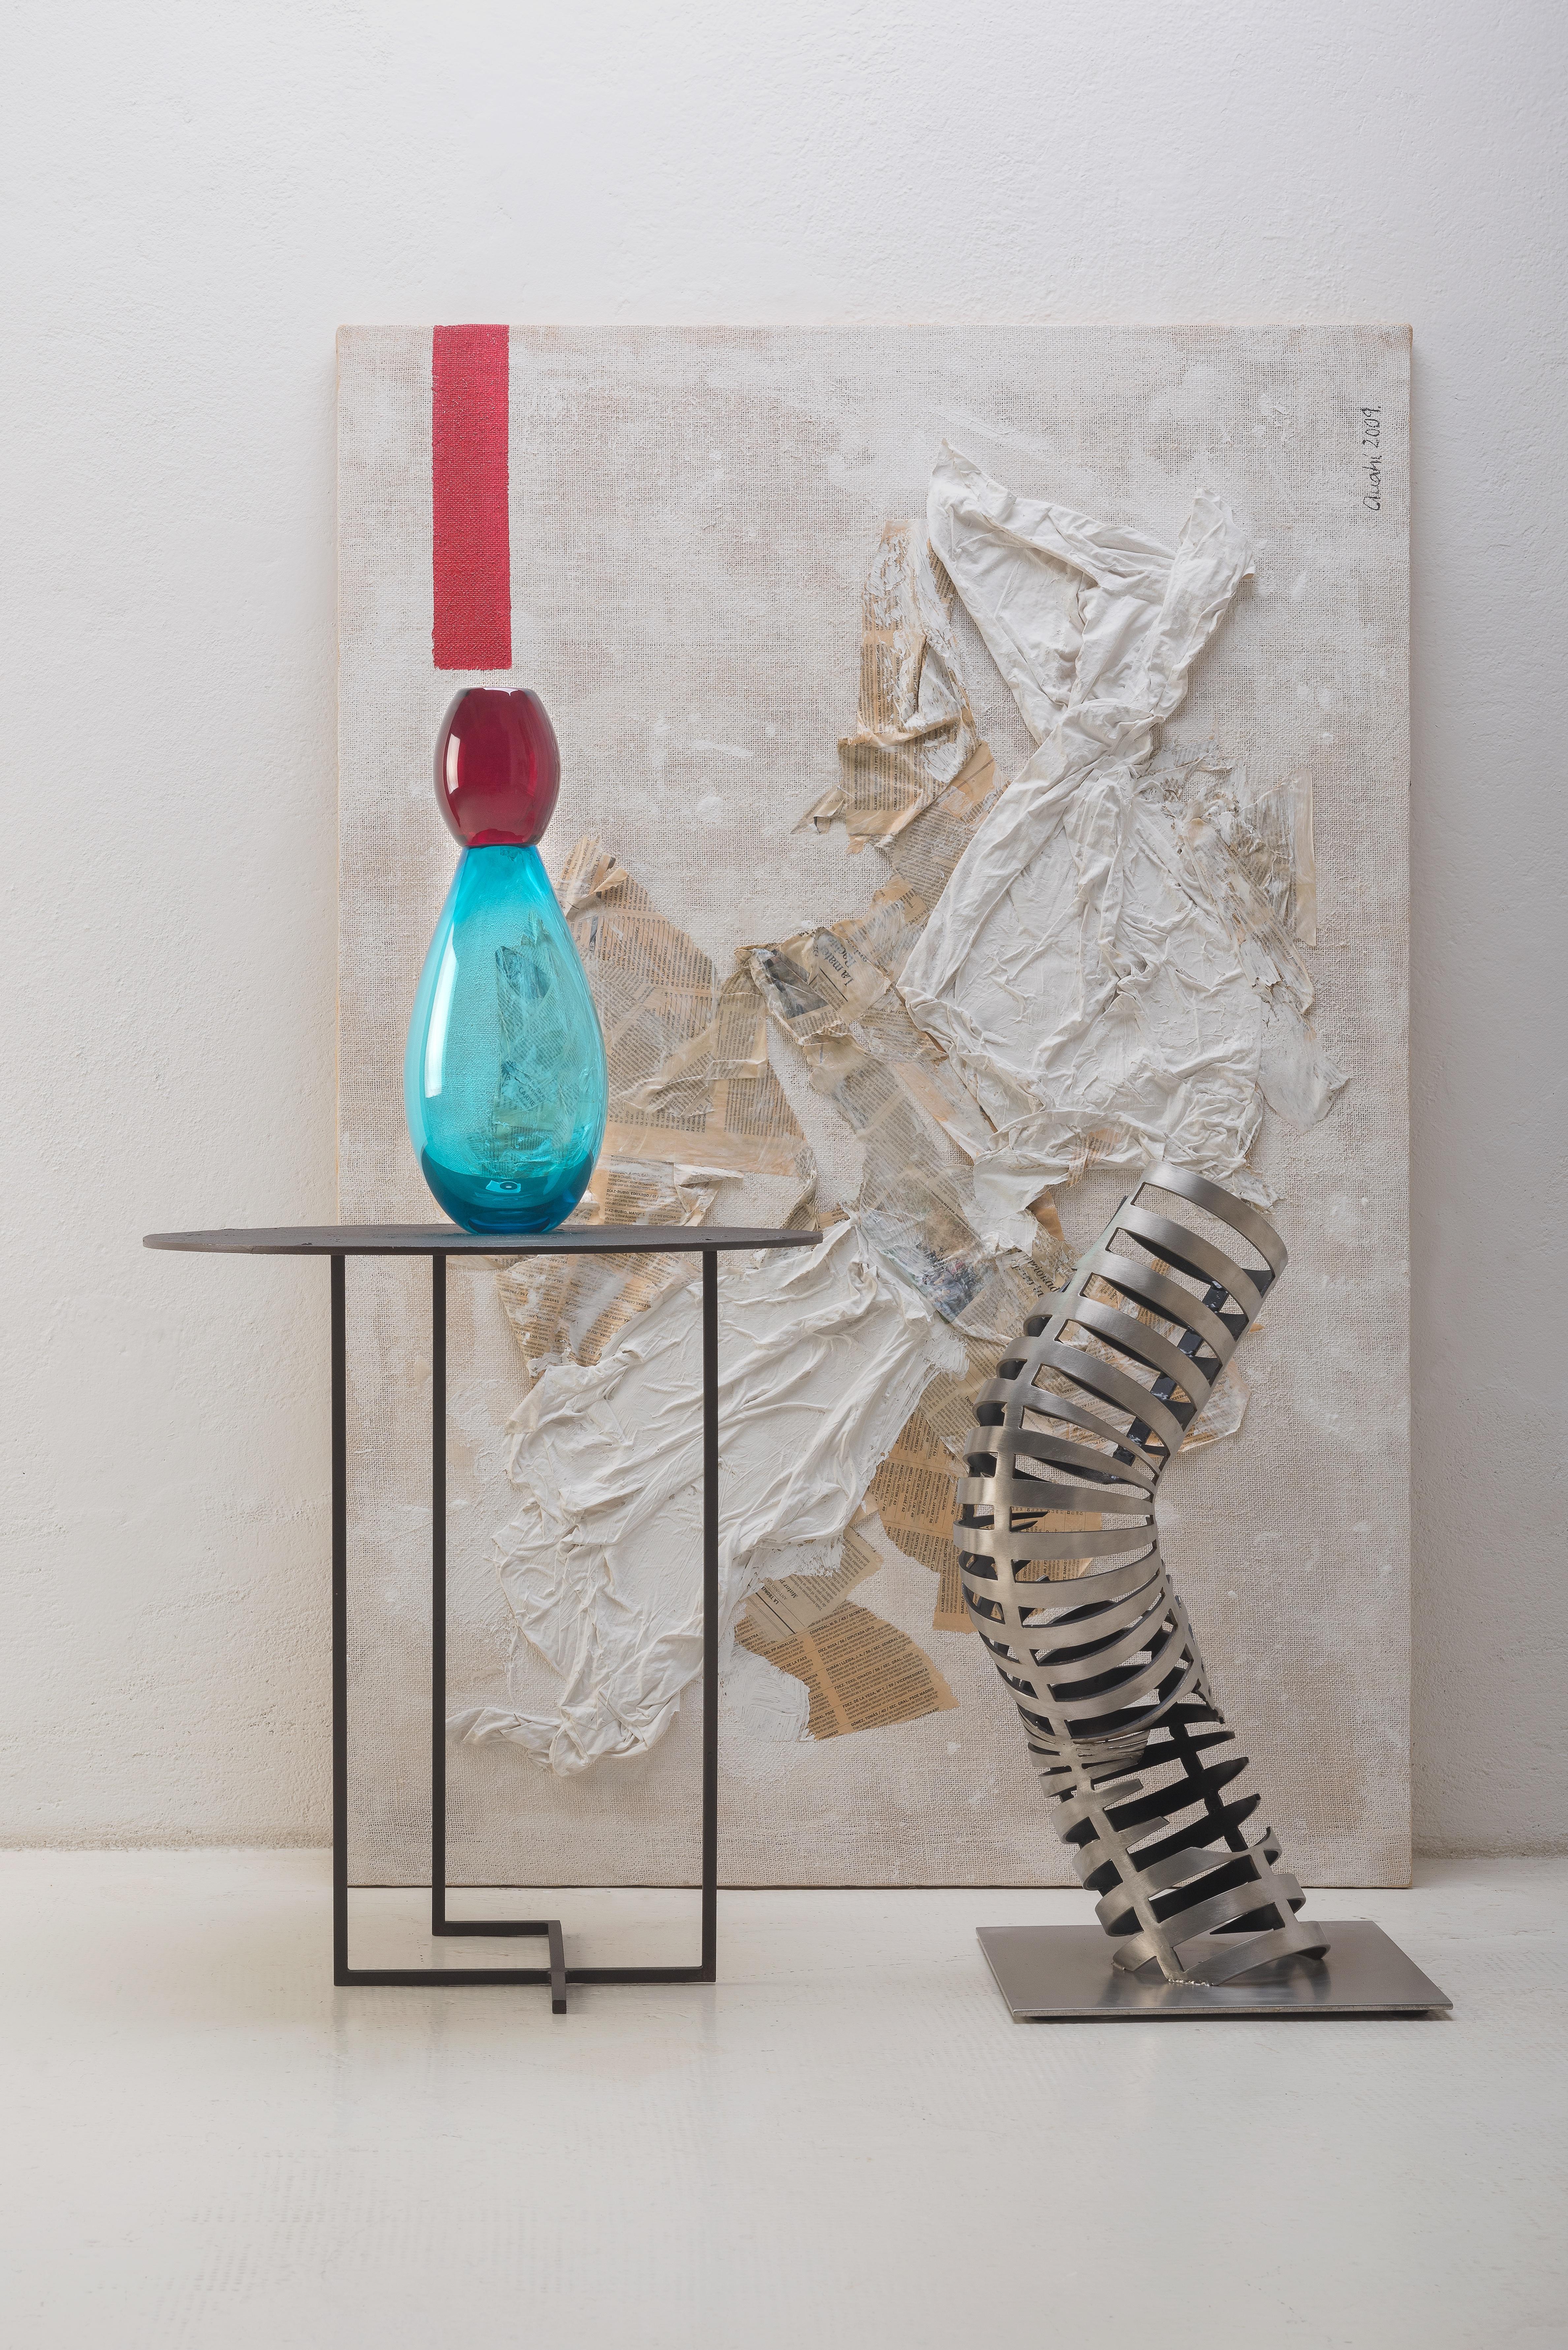 21ème siècle Karim Rashid king vase Murano glass diverses couleurs.
King, conçu par Karim Rashid, est un vase tout en courbes qui allie la royauté à l'esprit visuel. Proposée en combinaison avec Queen, la 